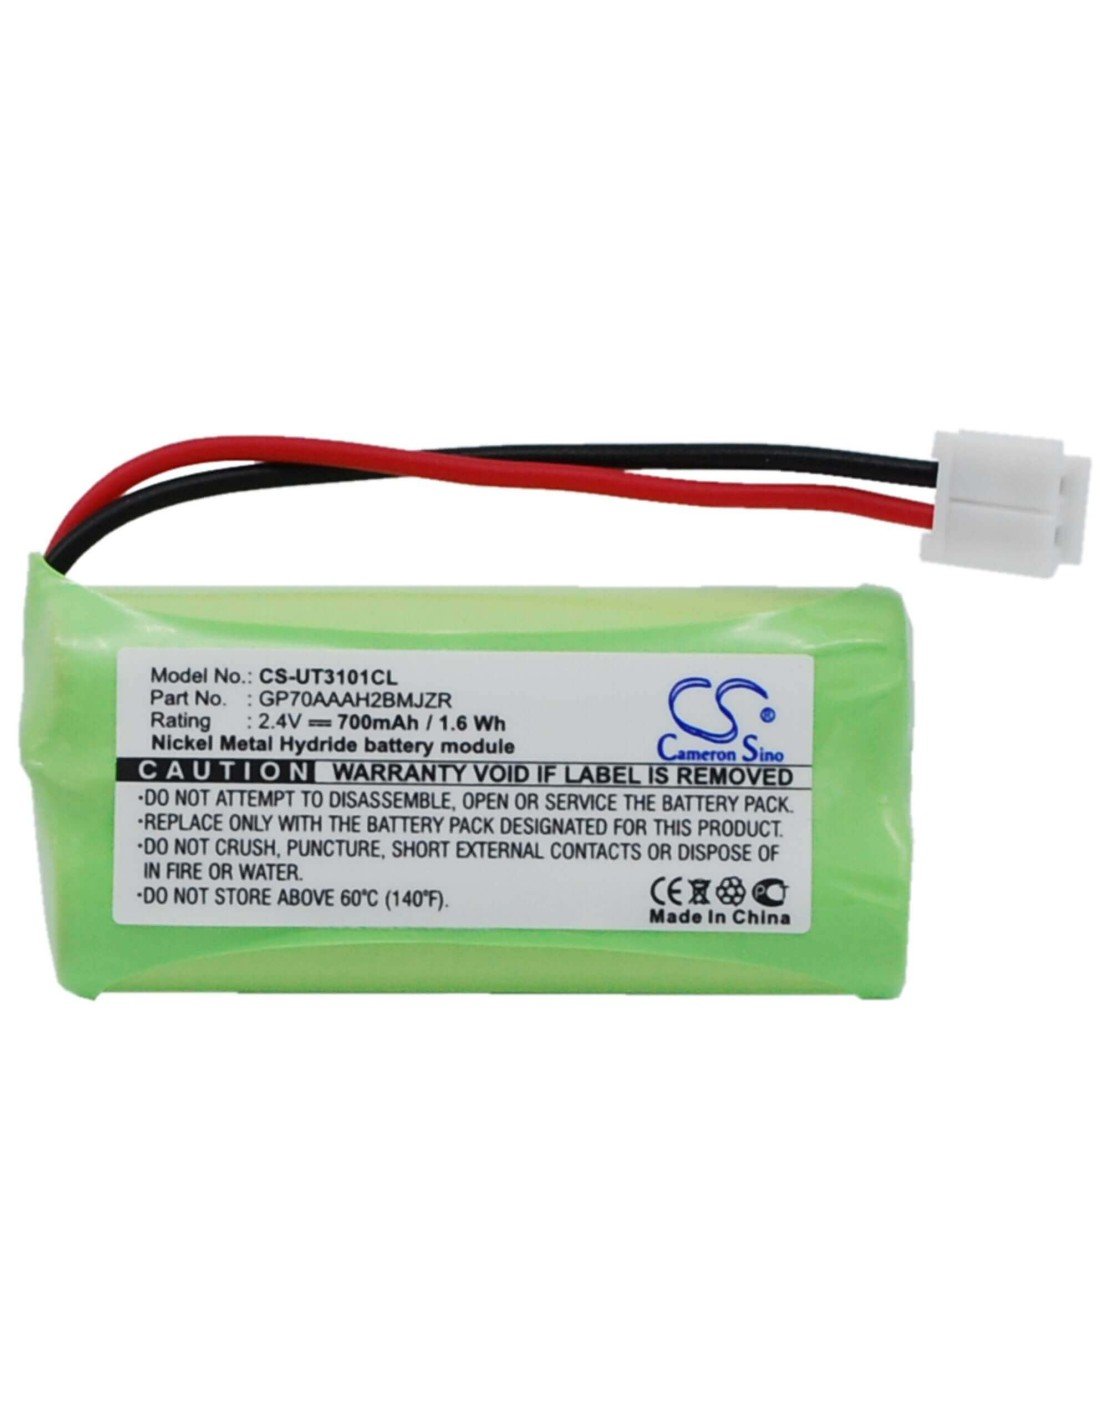 Battery for Tesco, Arc210, Arc211, Arc212, Arc410, 2.4V, 700mAh - 1.68Wh